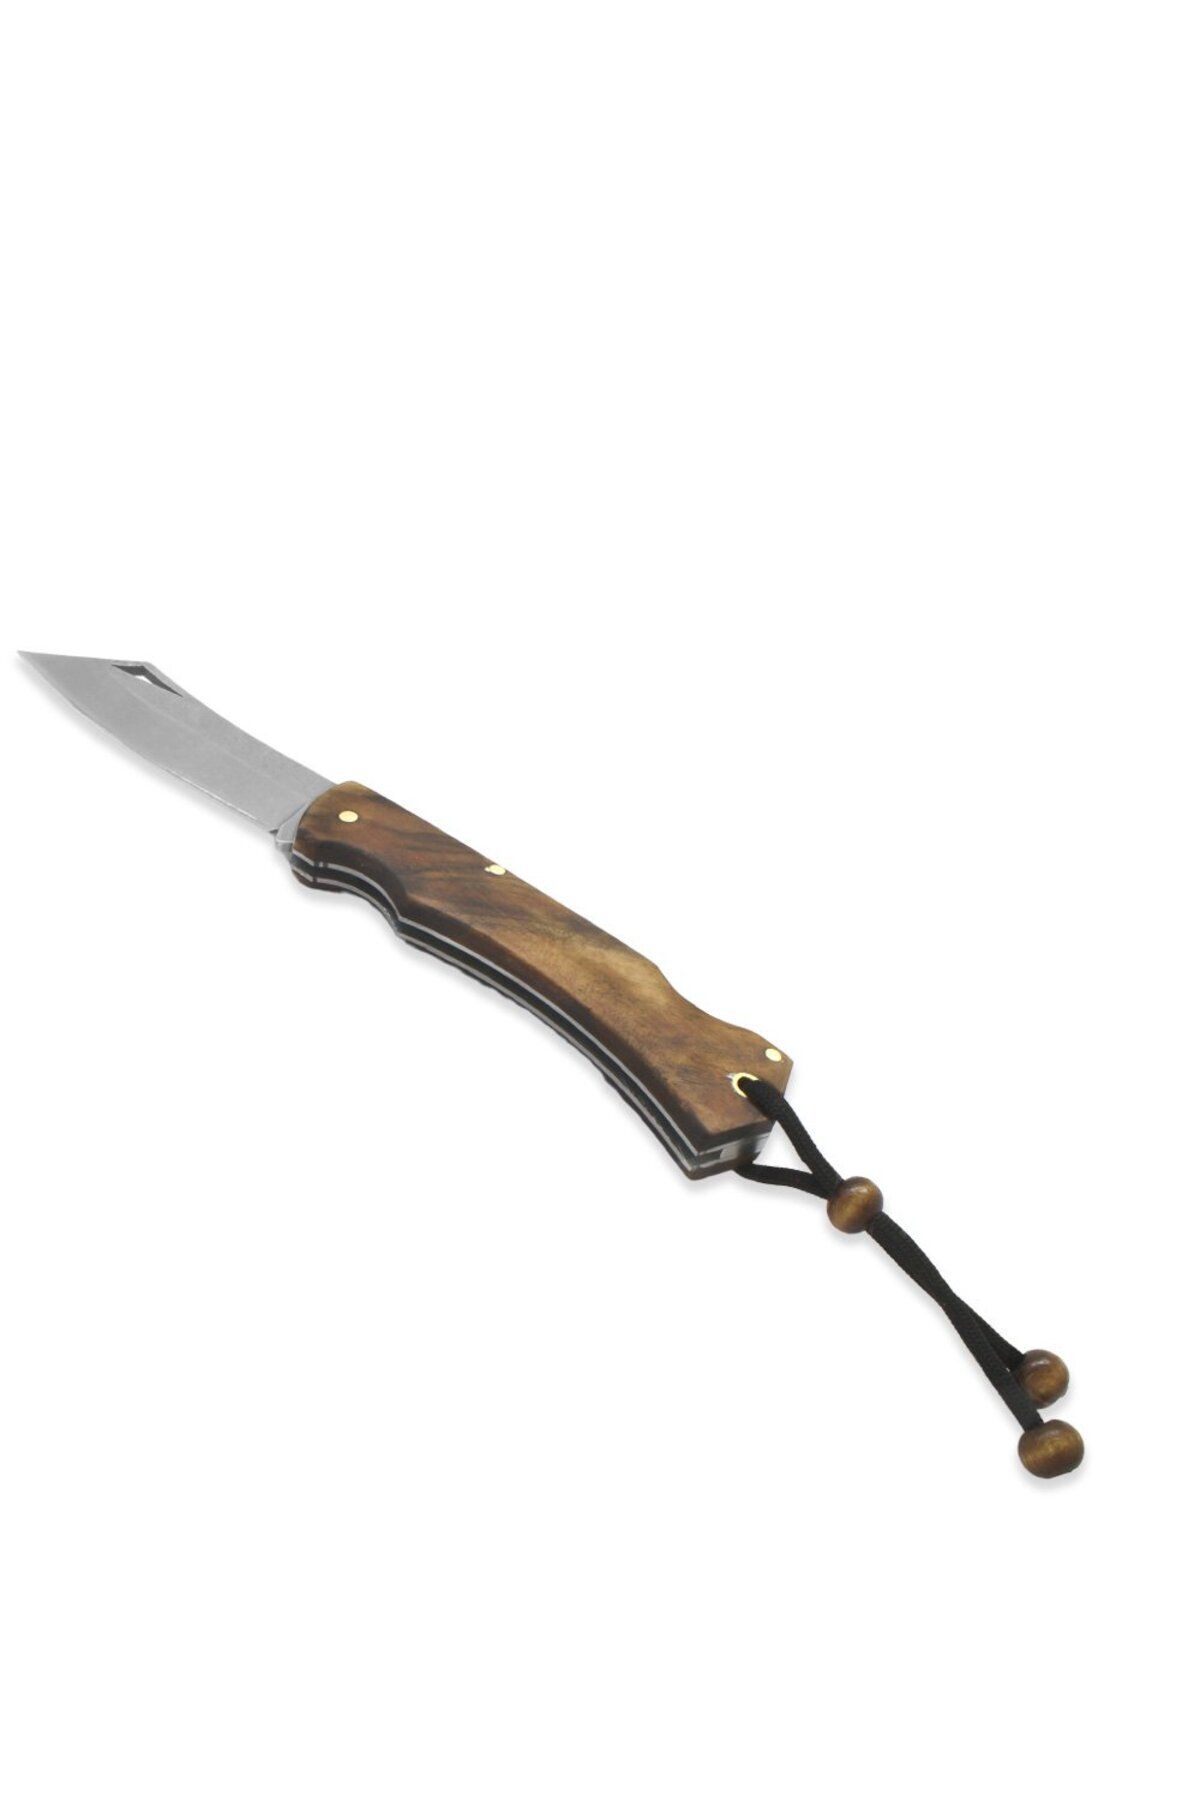 Tesbihane Kök Ceviz Ağacı Ustra Model 4116 Karartılmış Çelik Avcı/Kamp Bıçağı